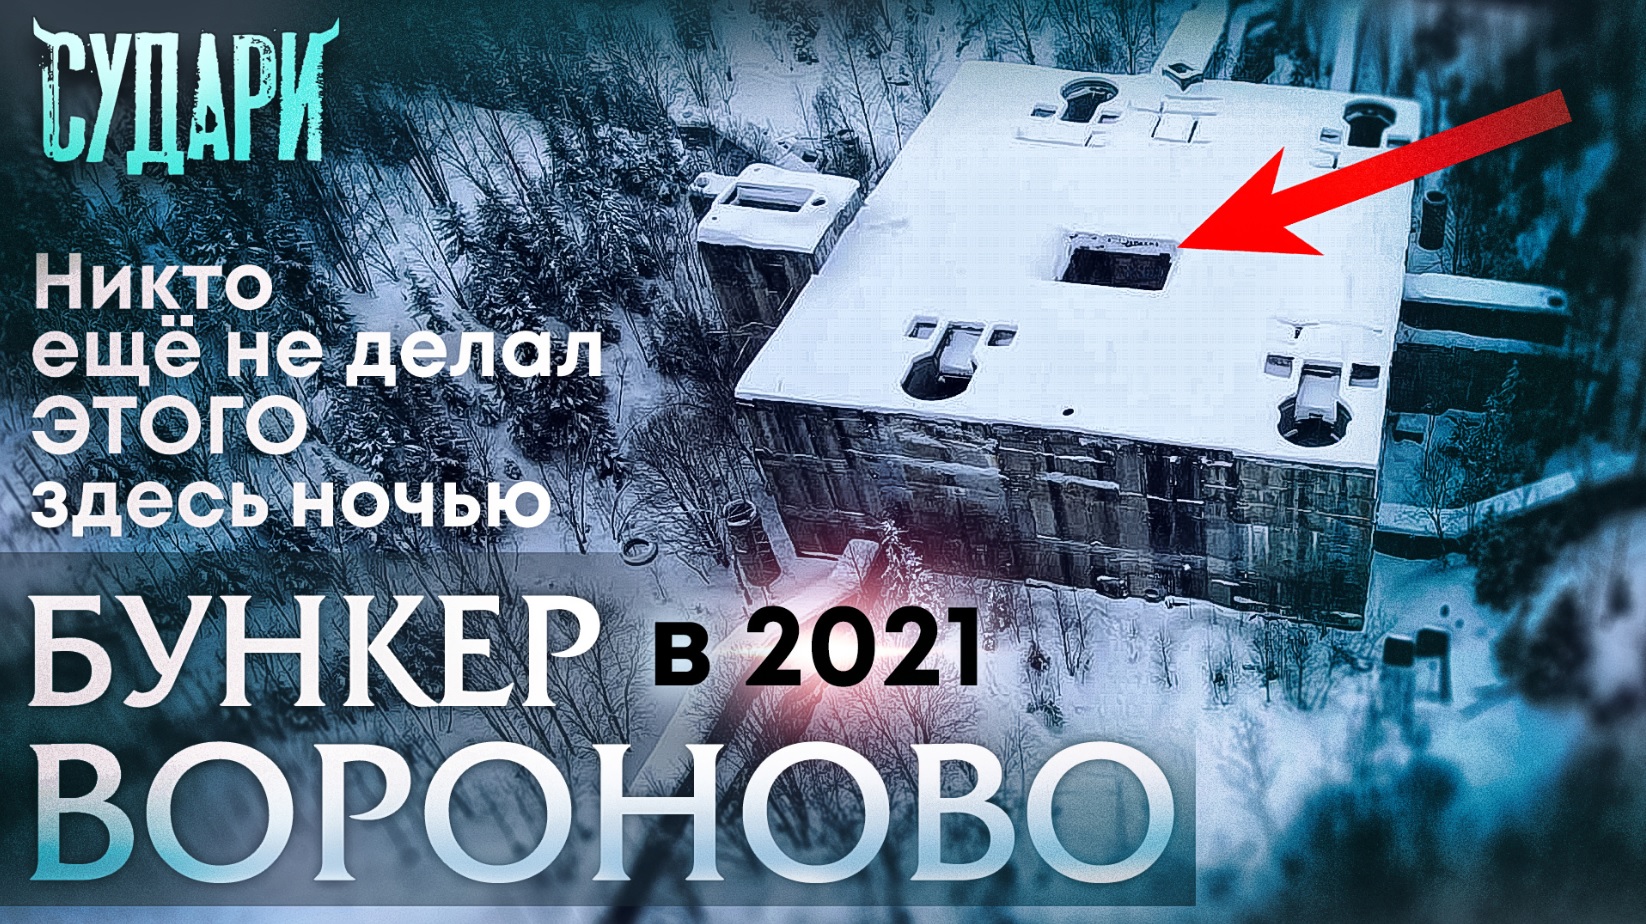 Бункер под Вороново, заброшенный в чаще леса. Пробрались ночью в секретный объект СССР. Зима 2021